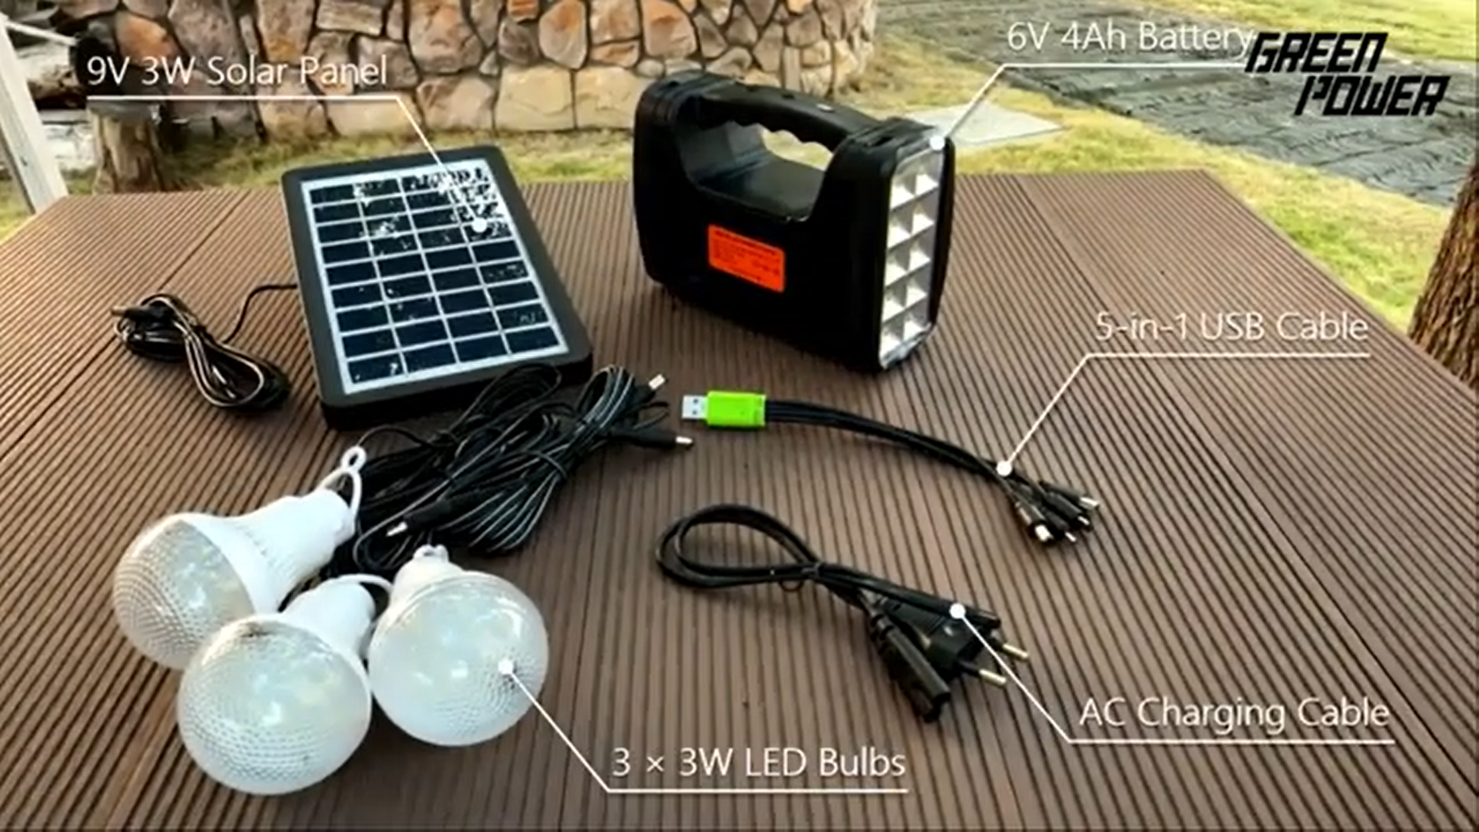 Mini kits d'éclairage solaire GP 351 - une solution simple et rapide pour éclairer les maisons manquant d'électricité